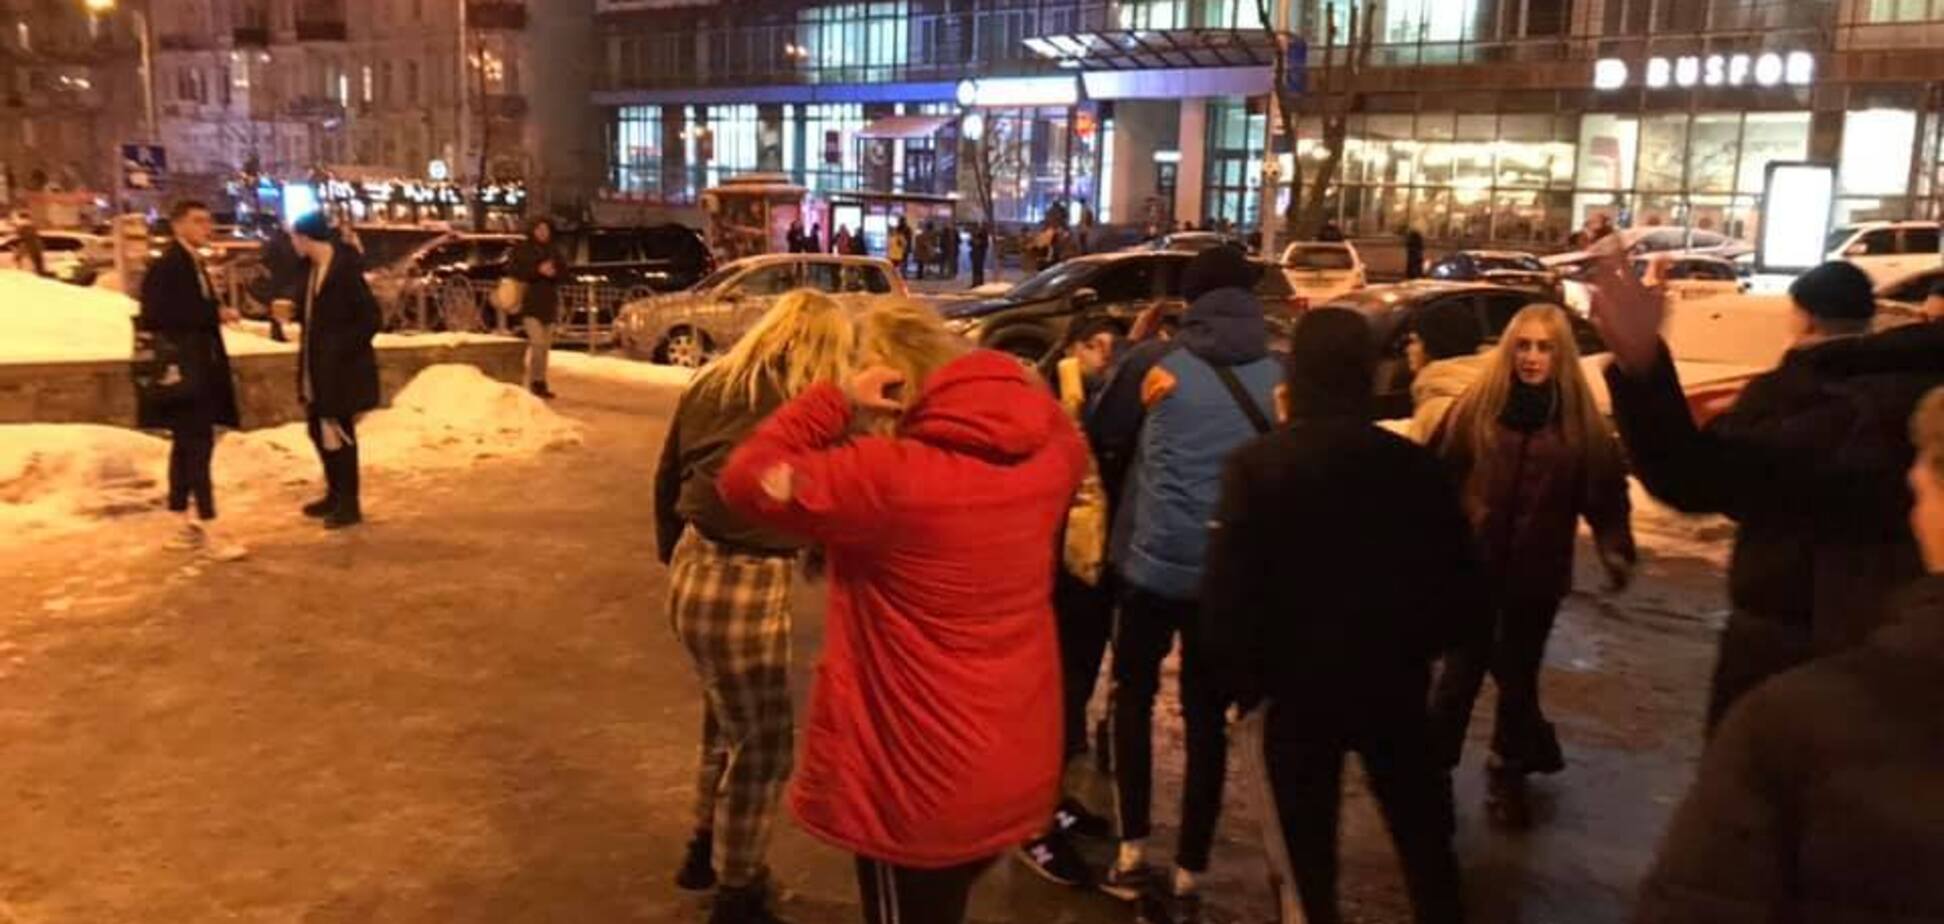 Били ногами і штовхали: з'явилися подробиці нападу підлітків у центрі Києва